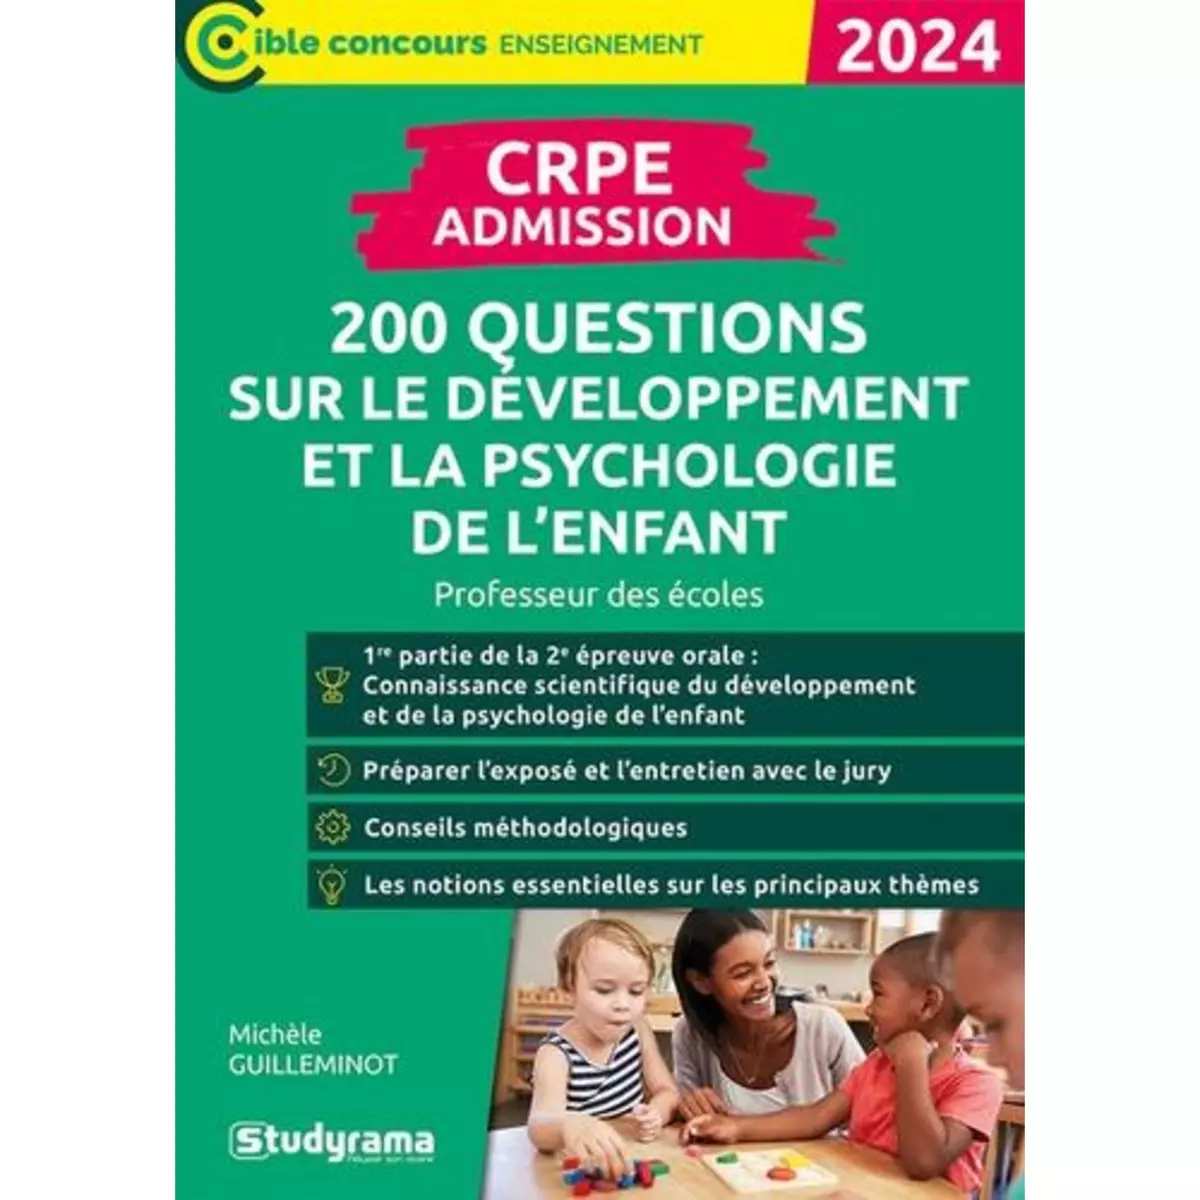  200 QUESTIONS SUR LE DEVELOPPEMENT ET LA PSYCHOLOGIE DE L'ENFANT. CRPE ADMISSION, EDITION 2024, Guilleminot Michèle